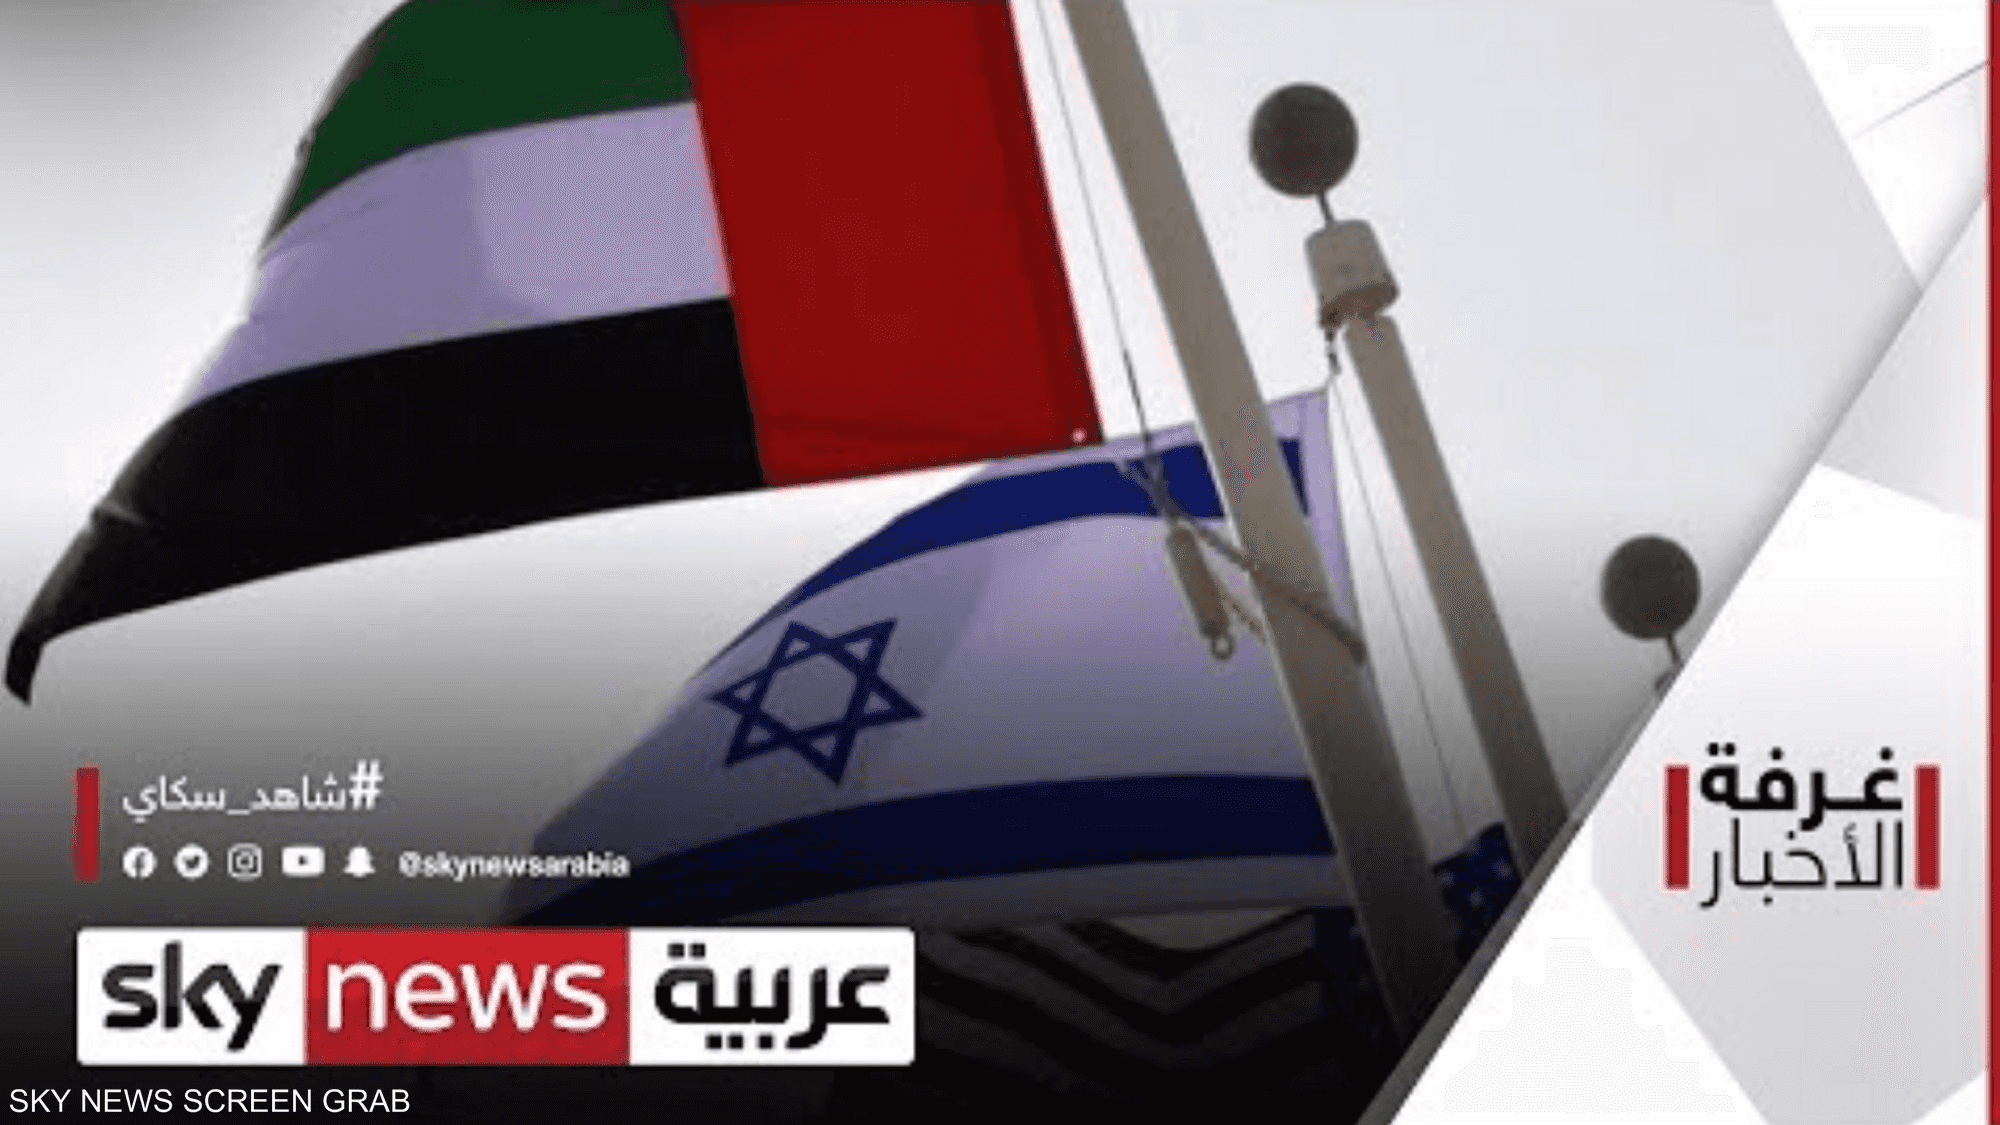 مجلس وزراء الإمارات يصادق على معاهدة السلام مع إسرائيل